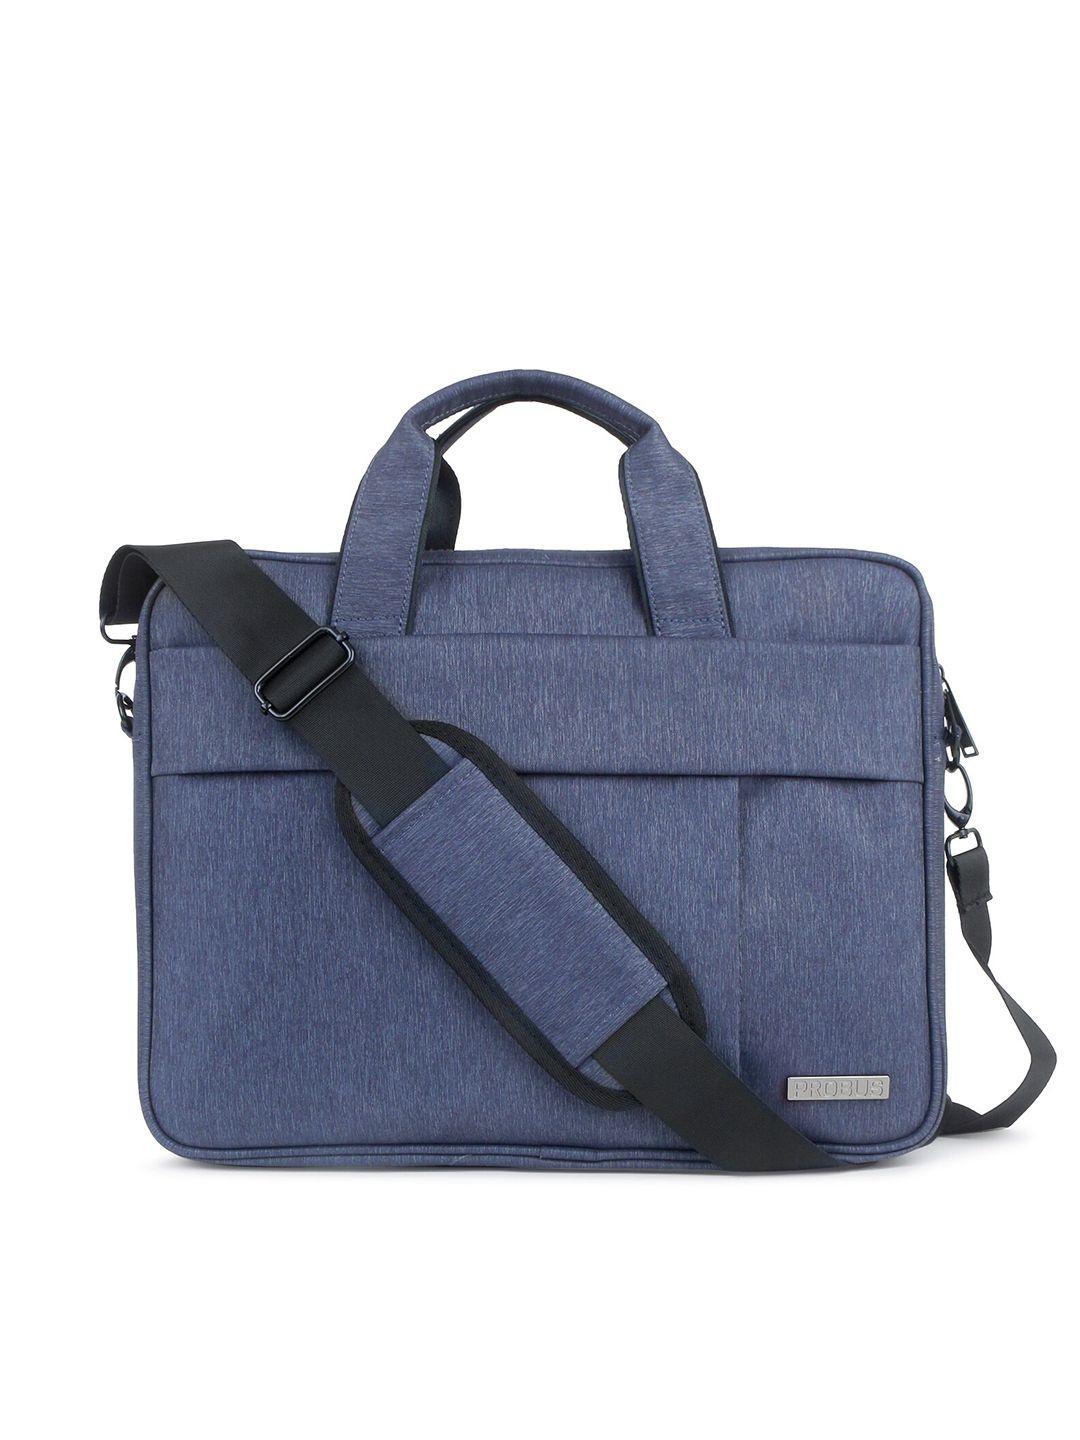 probus unisex blue & black laptop bag